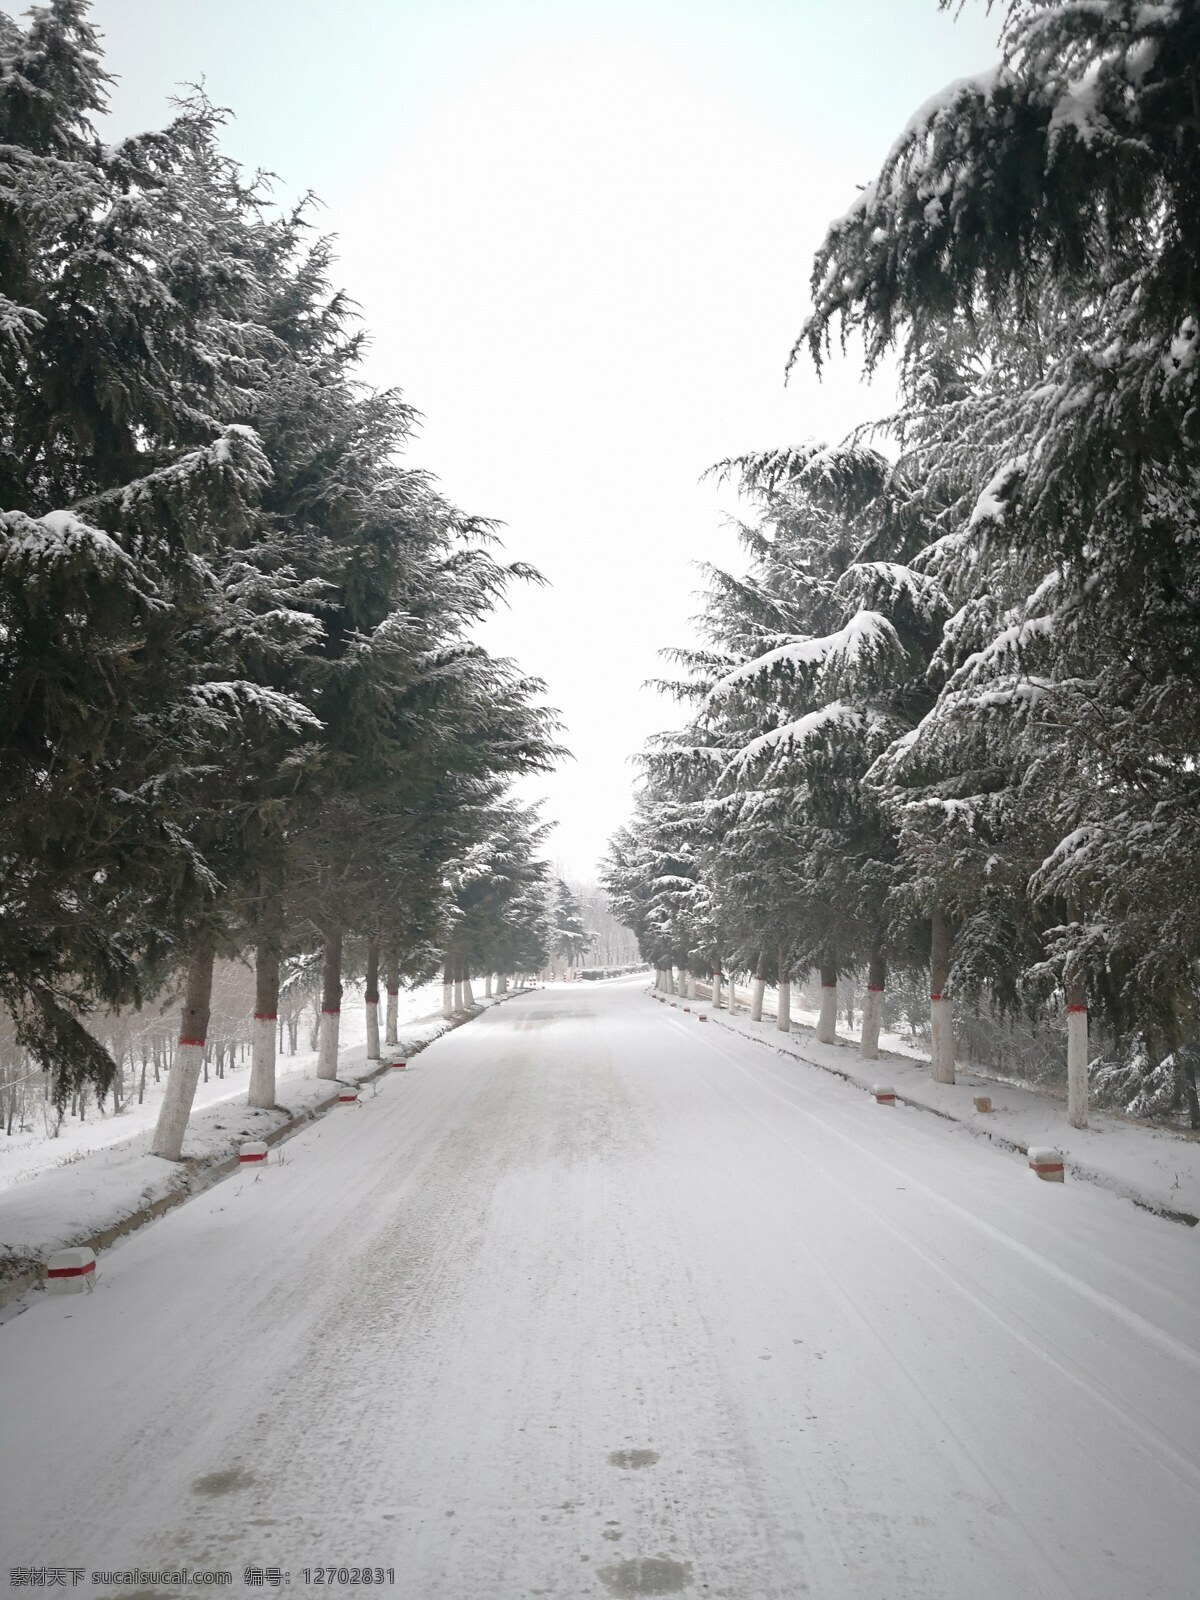 冬季雪景素材 美丽雪景 雪景素材 雪景图片 雪景照片 雪景手机图片 共享图片 自然景观